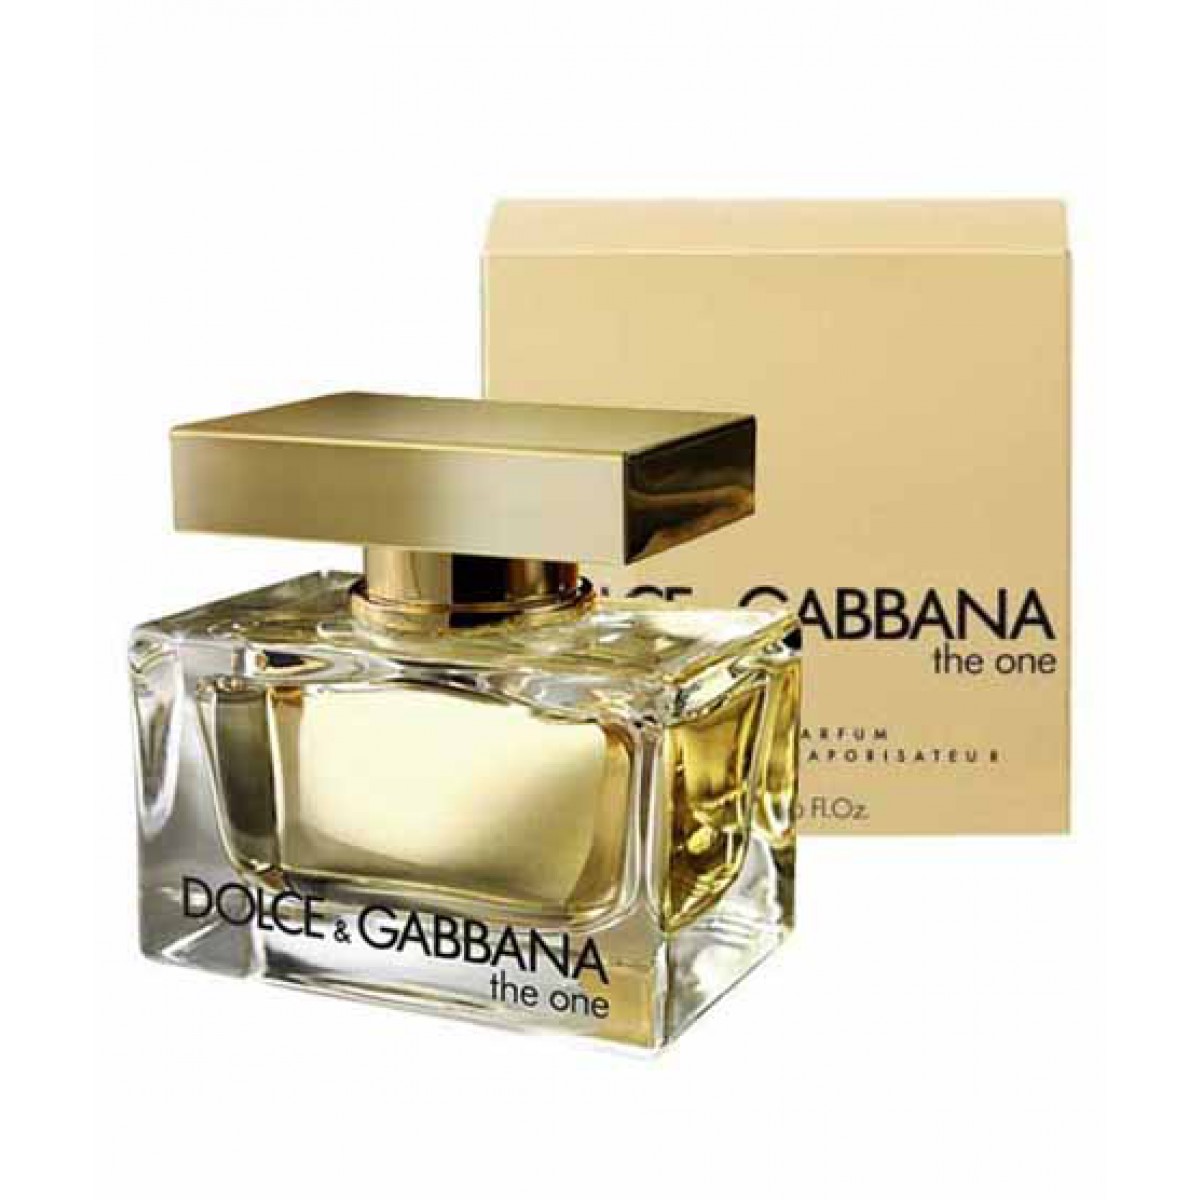 Dolce & Gabbana the one 50ml - nước hoa biên hoà